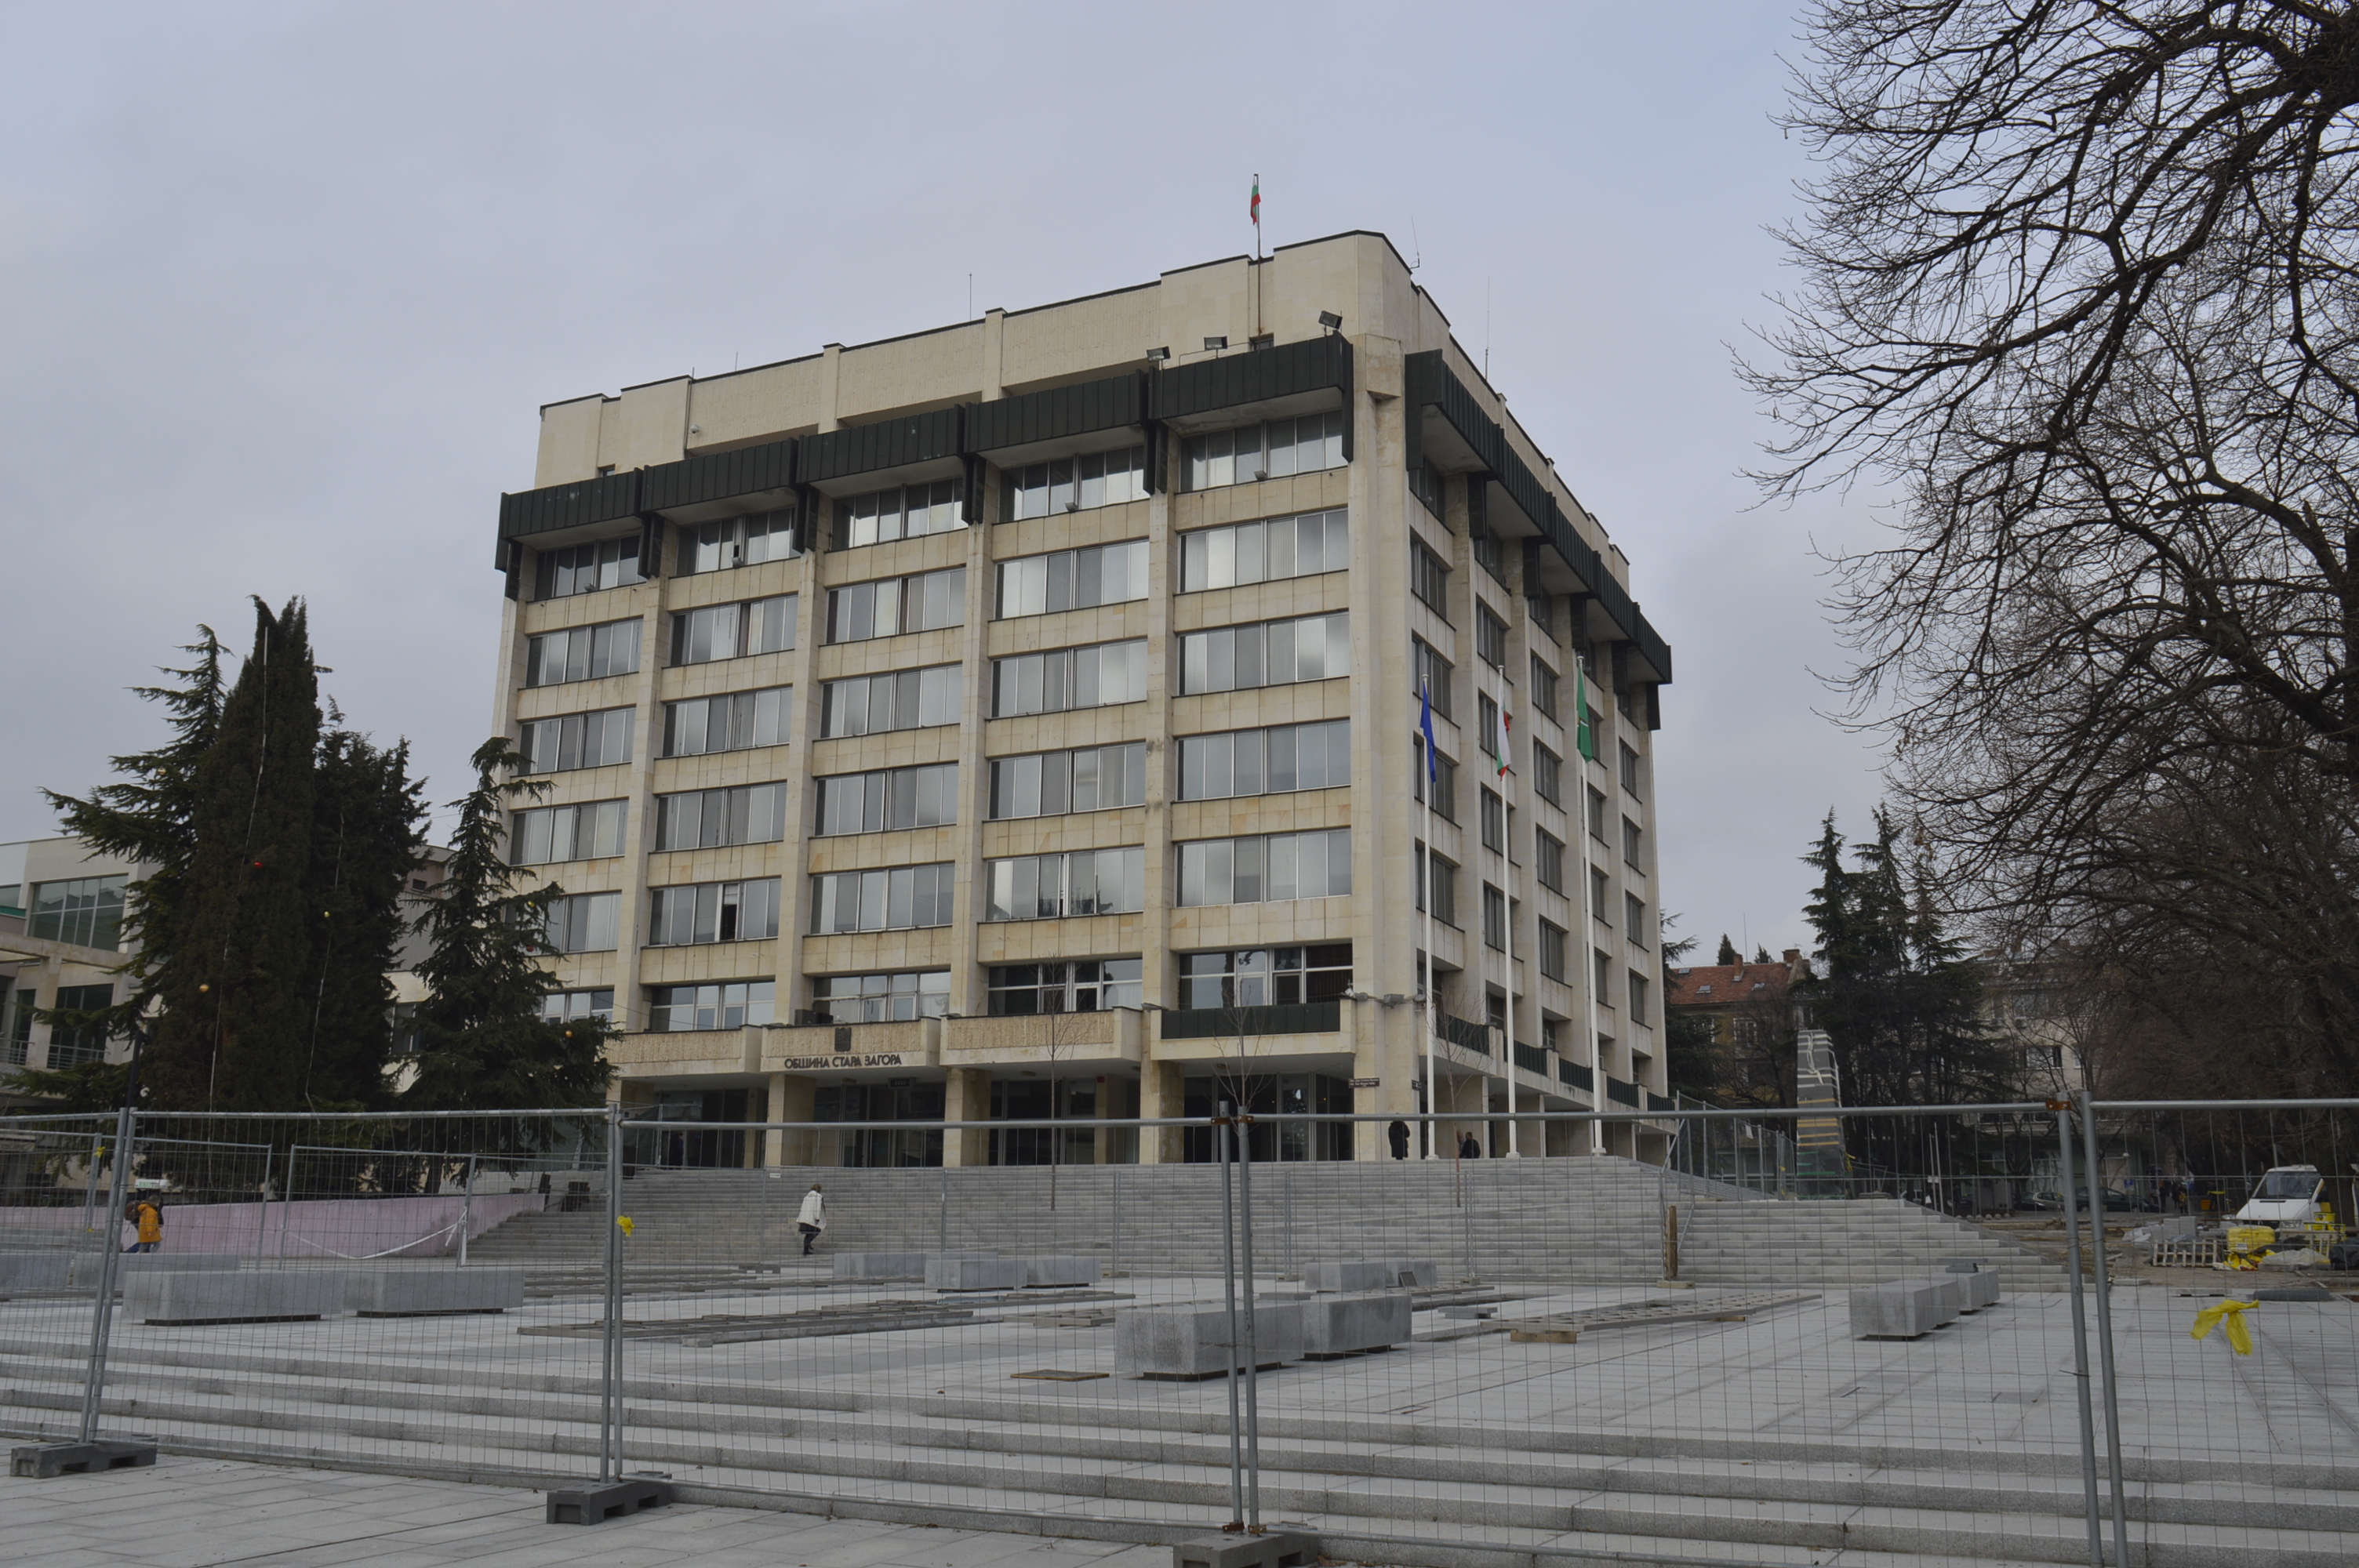 СТАНОВИЩЕ  на ПП „Движение Да България” - Стара Загора  относно проект за саниране сградата на Общината